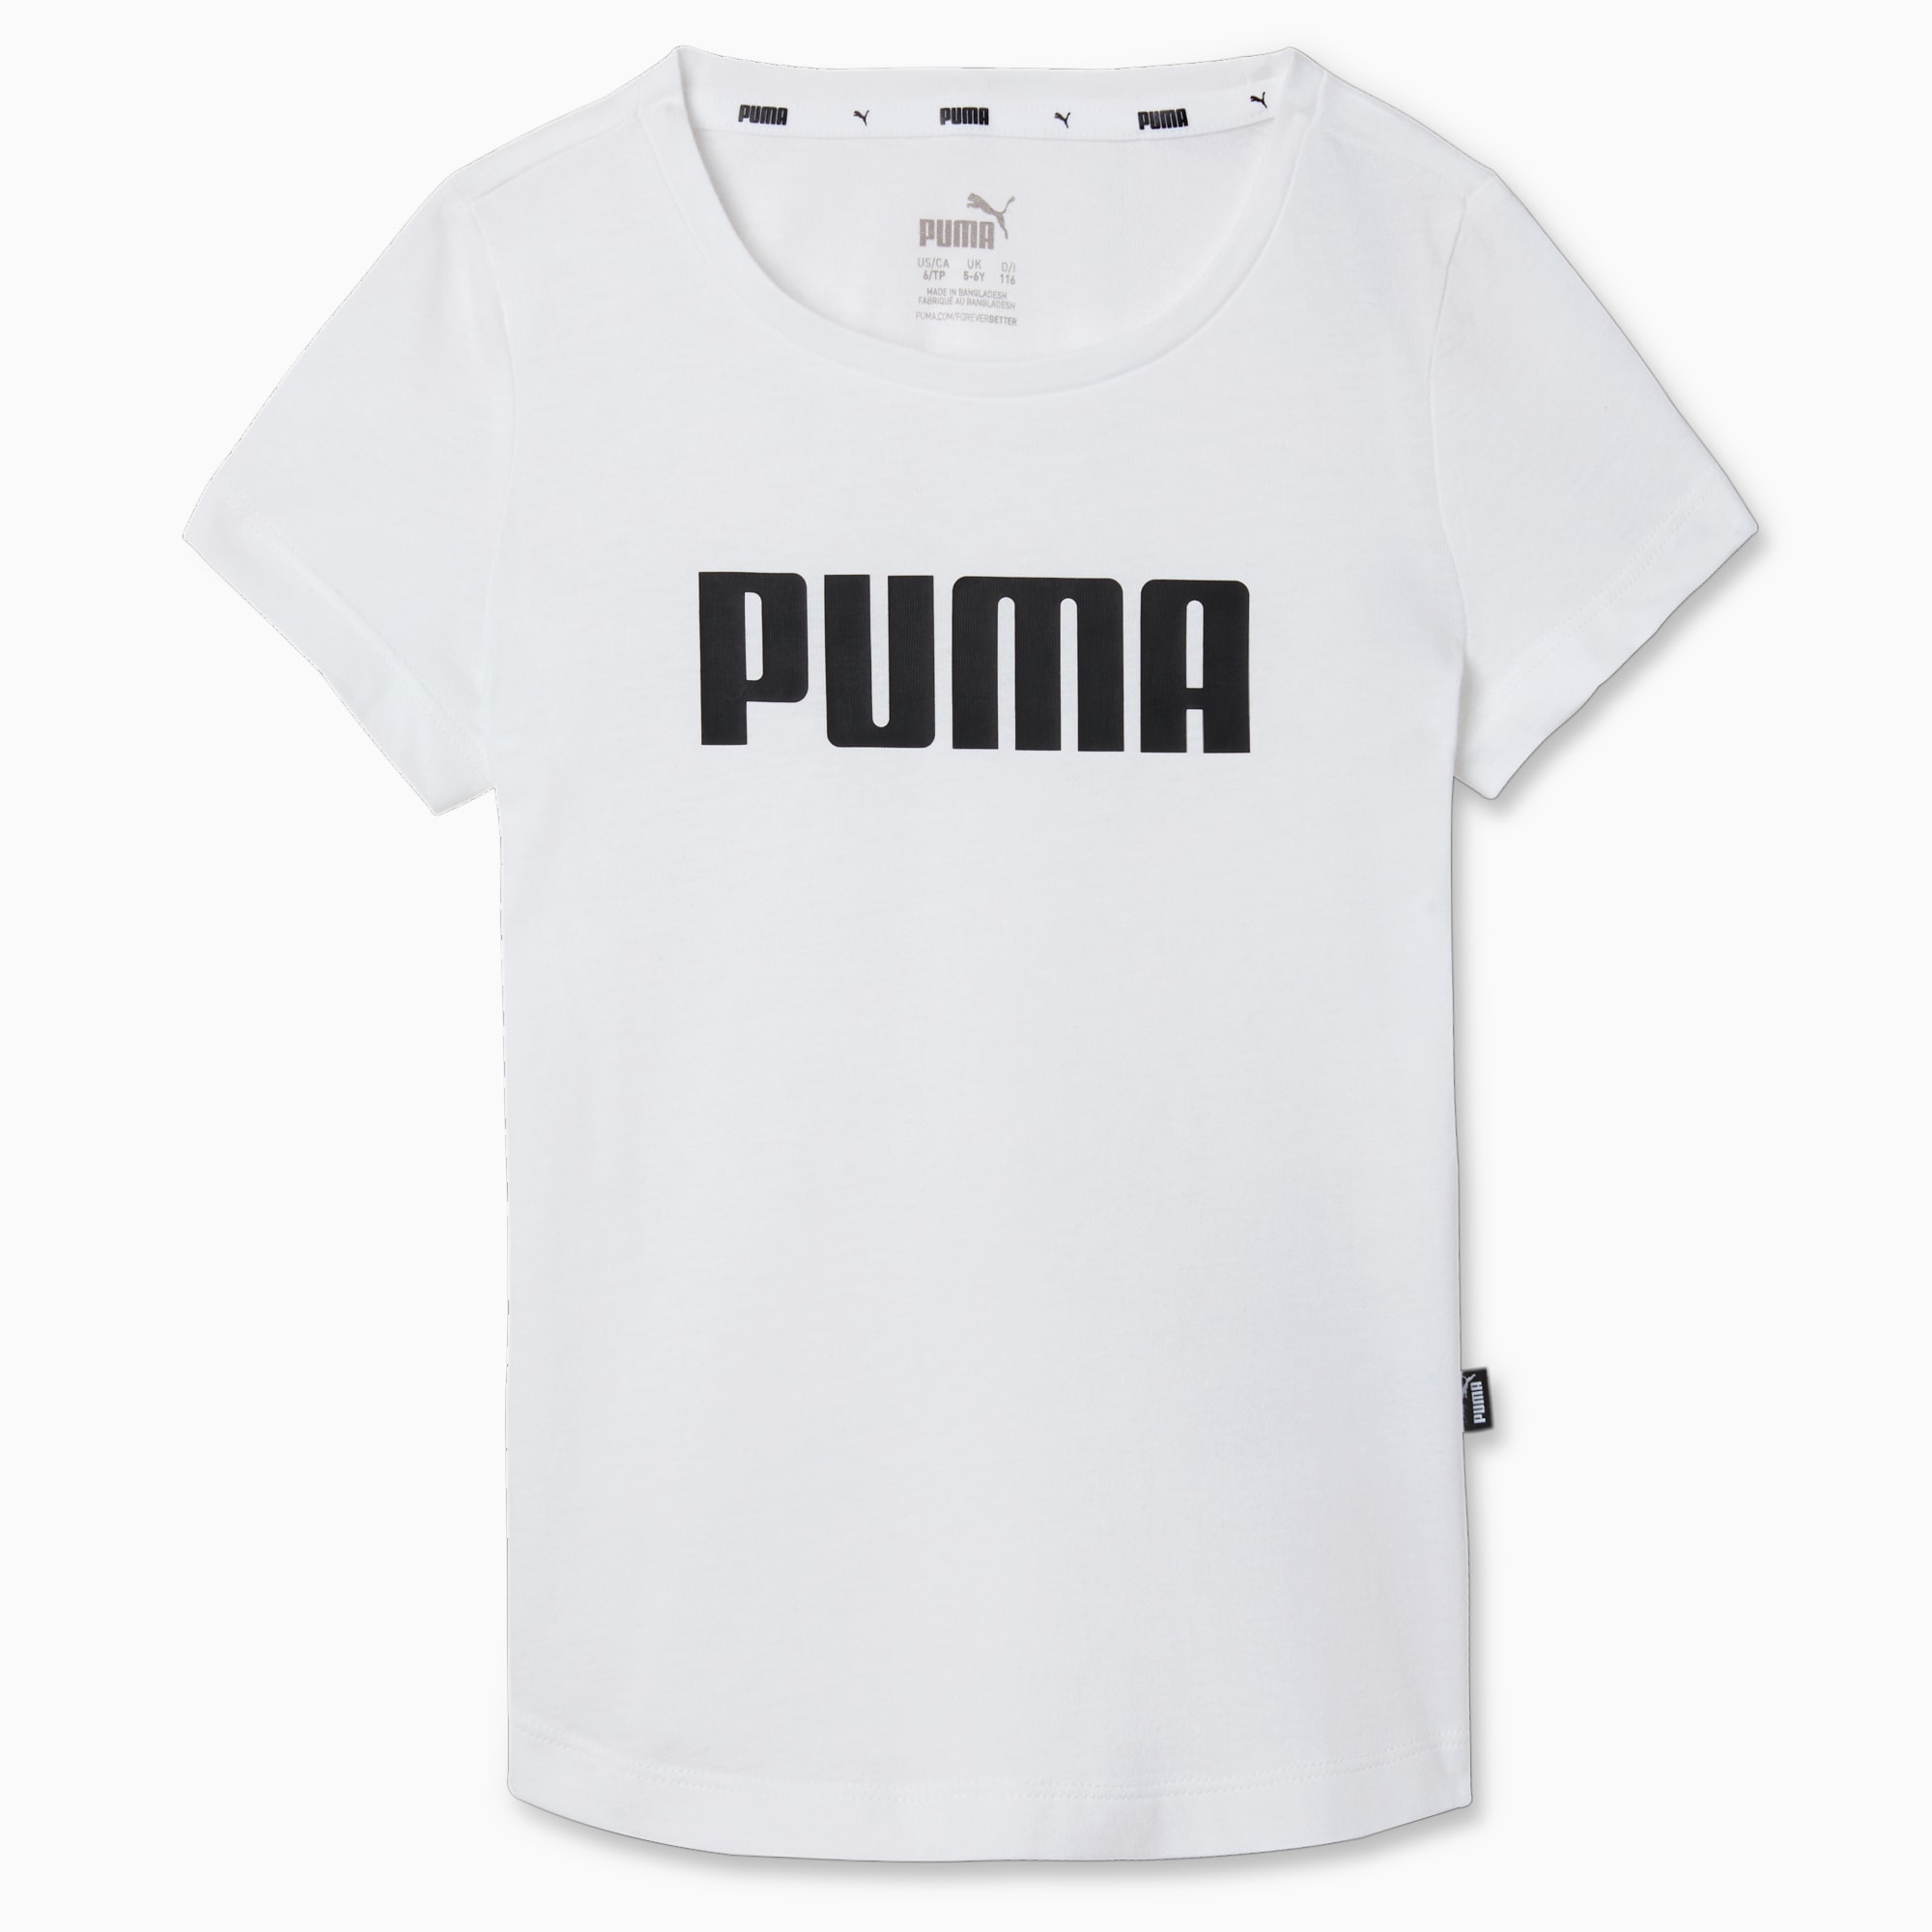 | White T-Shirt | Puma | Girls Shop PUMA Essential All Puma PUMA